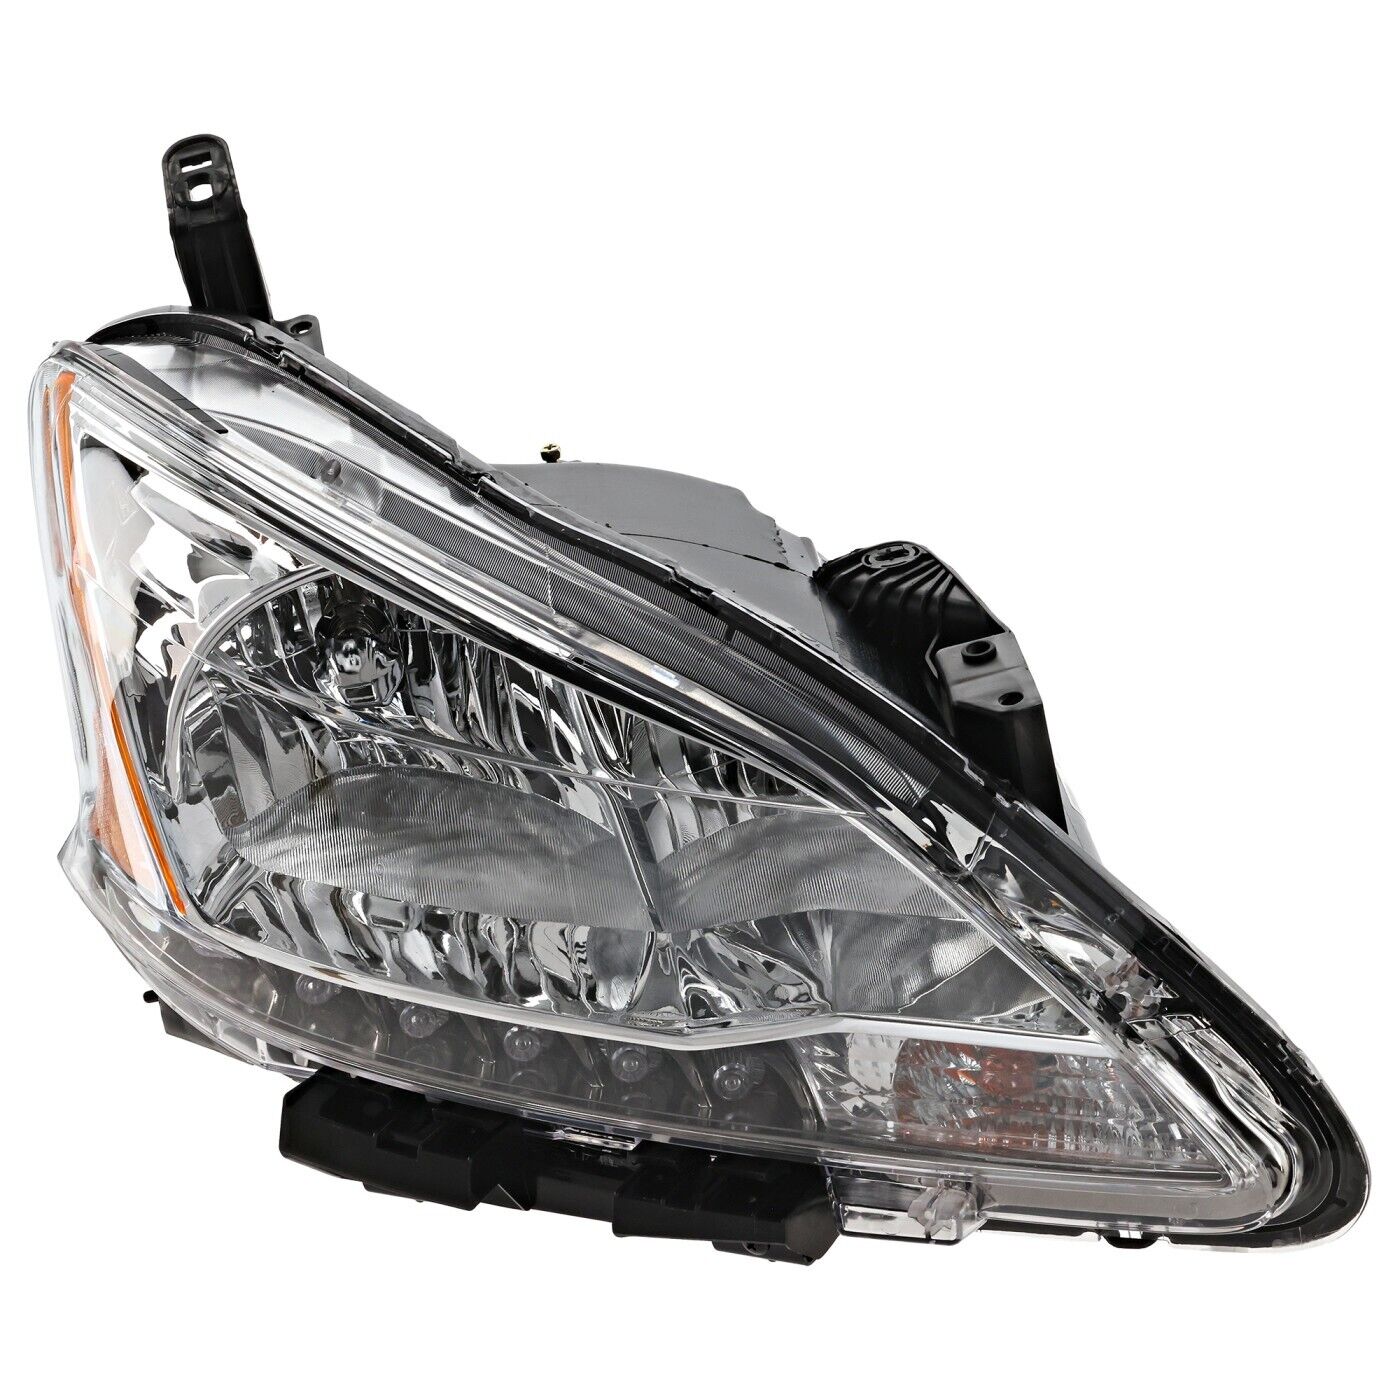 Headlight Headlamp Halogen Passenger Side Right RH for 13-15 Nissan Sentra